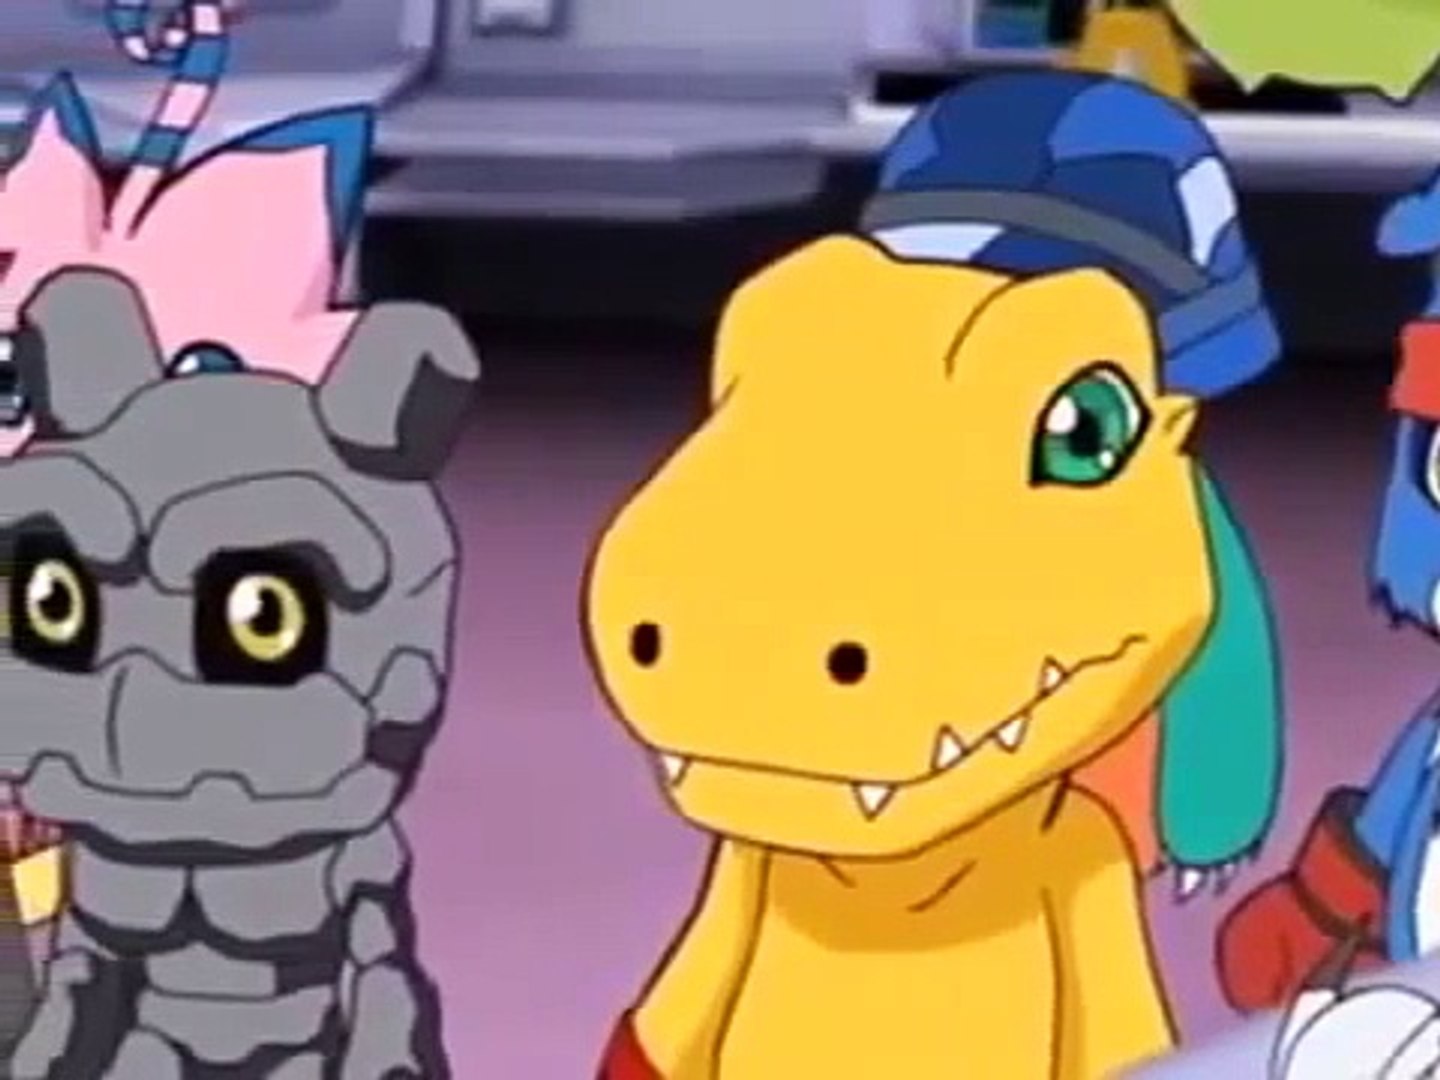 Mais Episódios de Digimon Savers! – AdvDmo